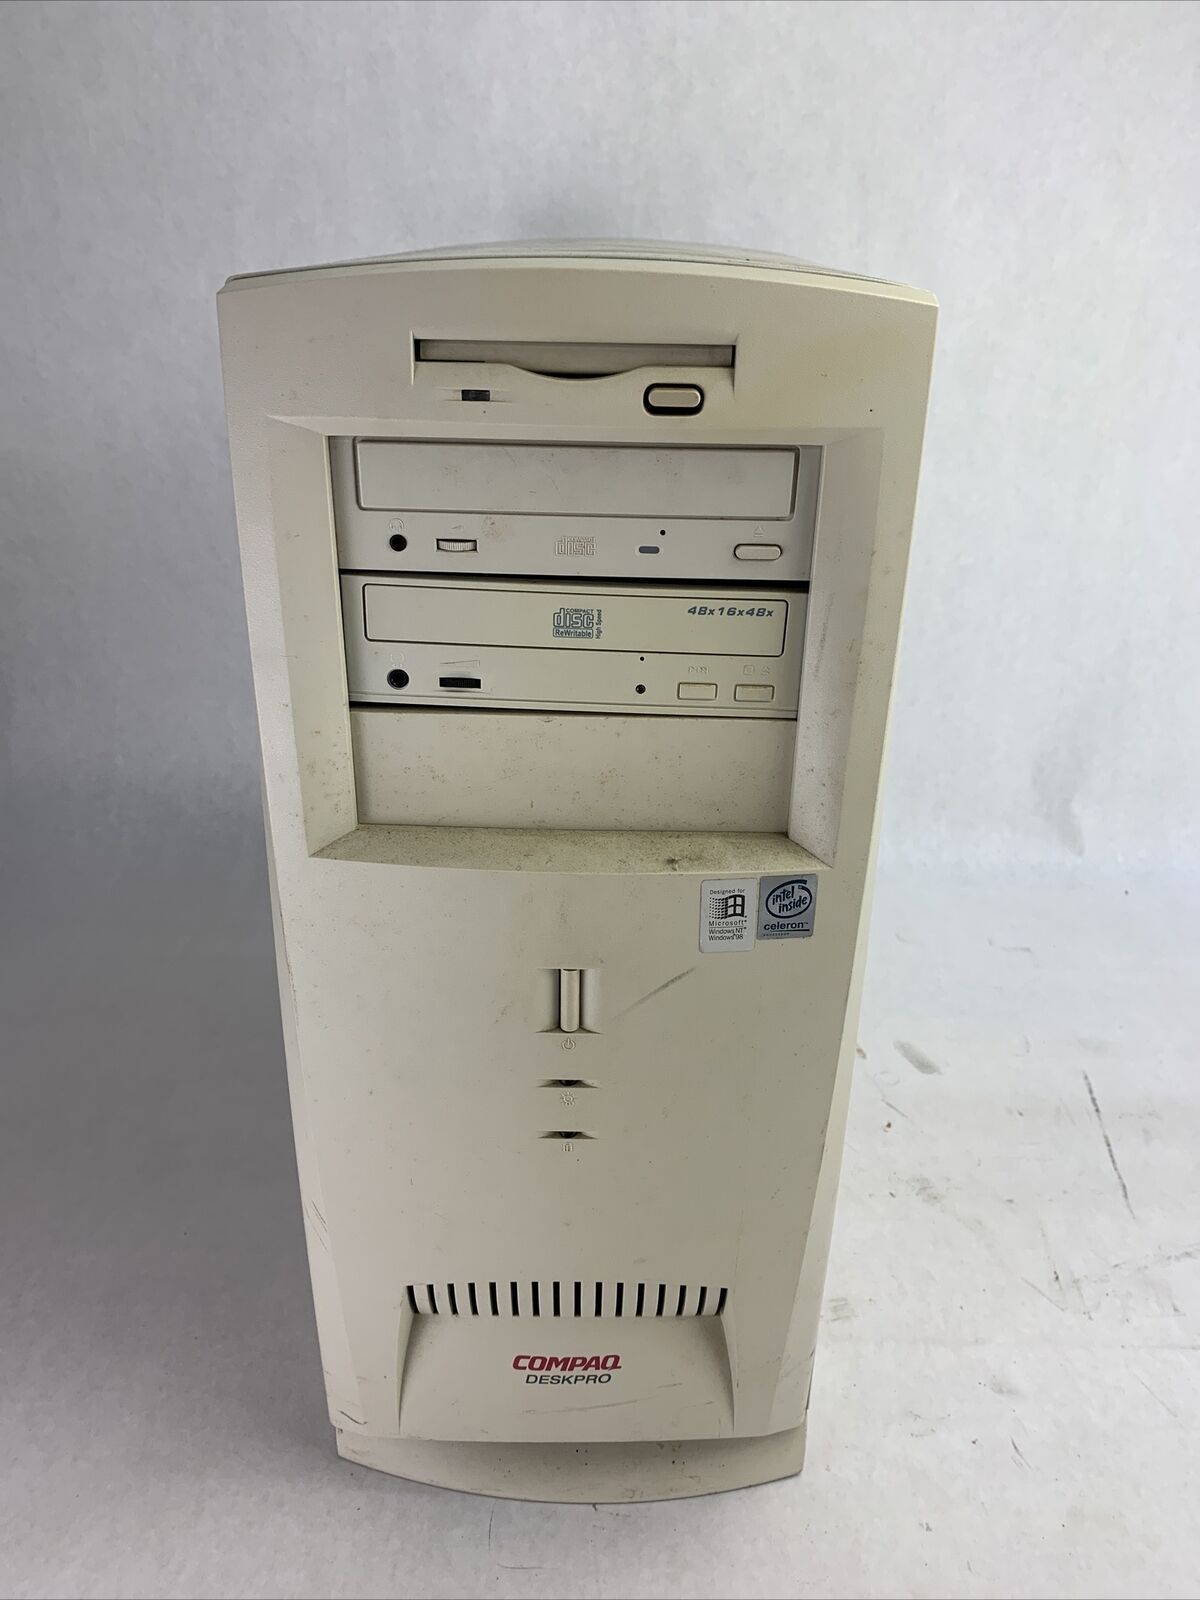 Compaq DeskPro EN C333 MT Intel Pentium II 450MHz 512MB RAM No HDDNo OS